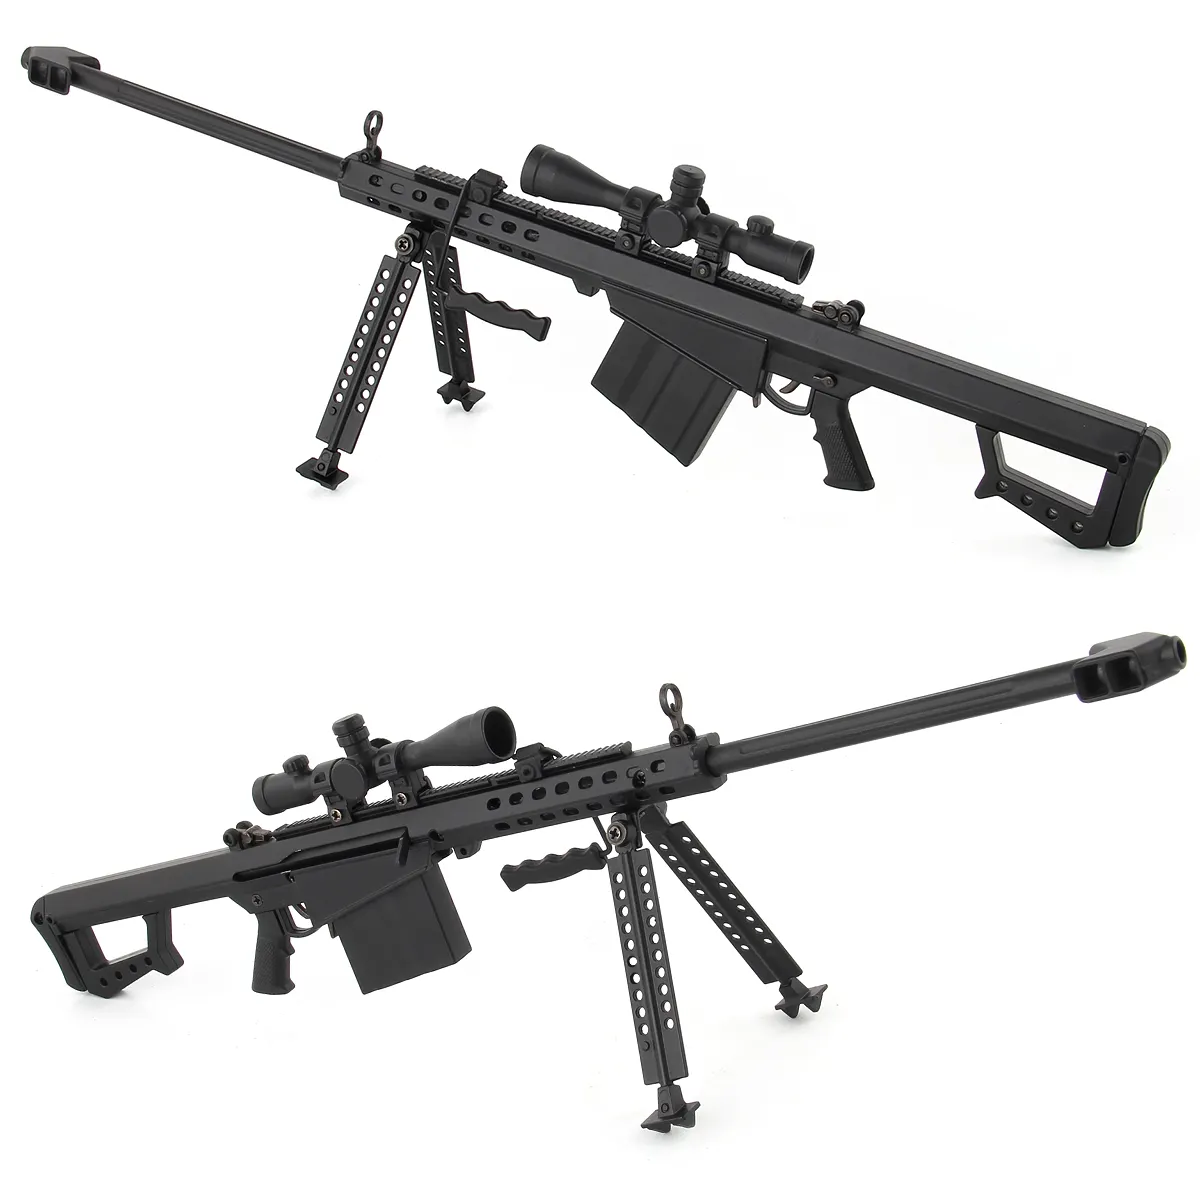 Mini Metalen Wapens Pistool Model Lichtmetalen Pistool Speelgoed Barrett Sniper Rifle AK47 Speelgoed Pistool